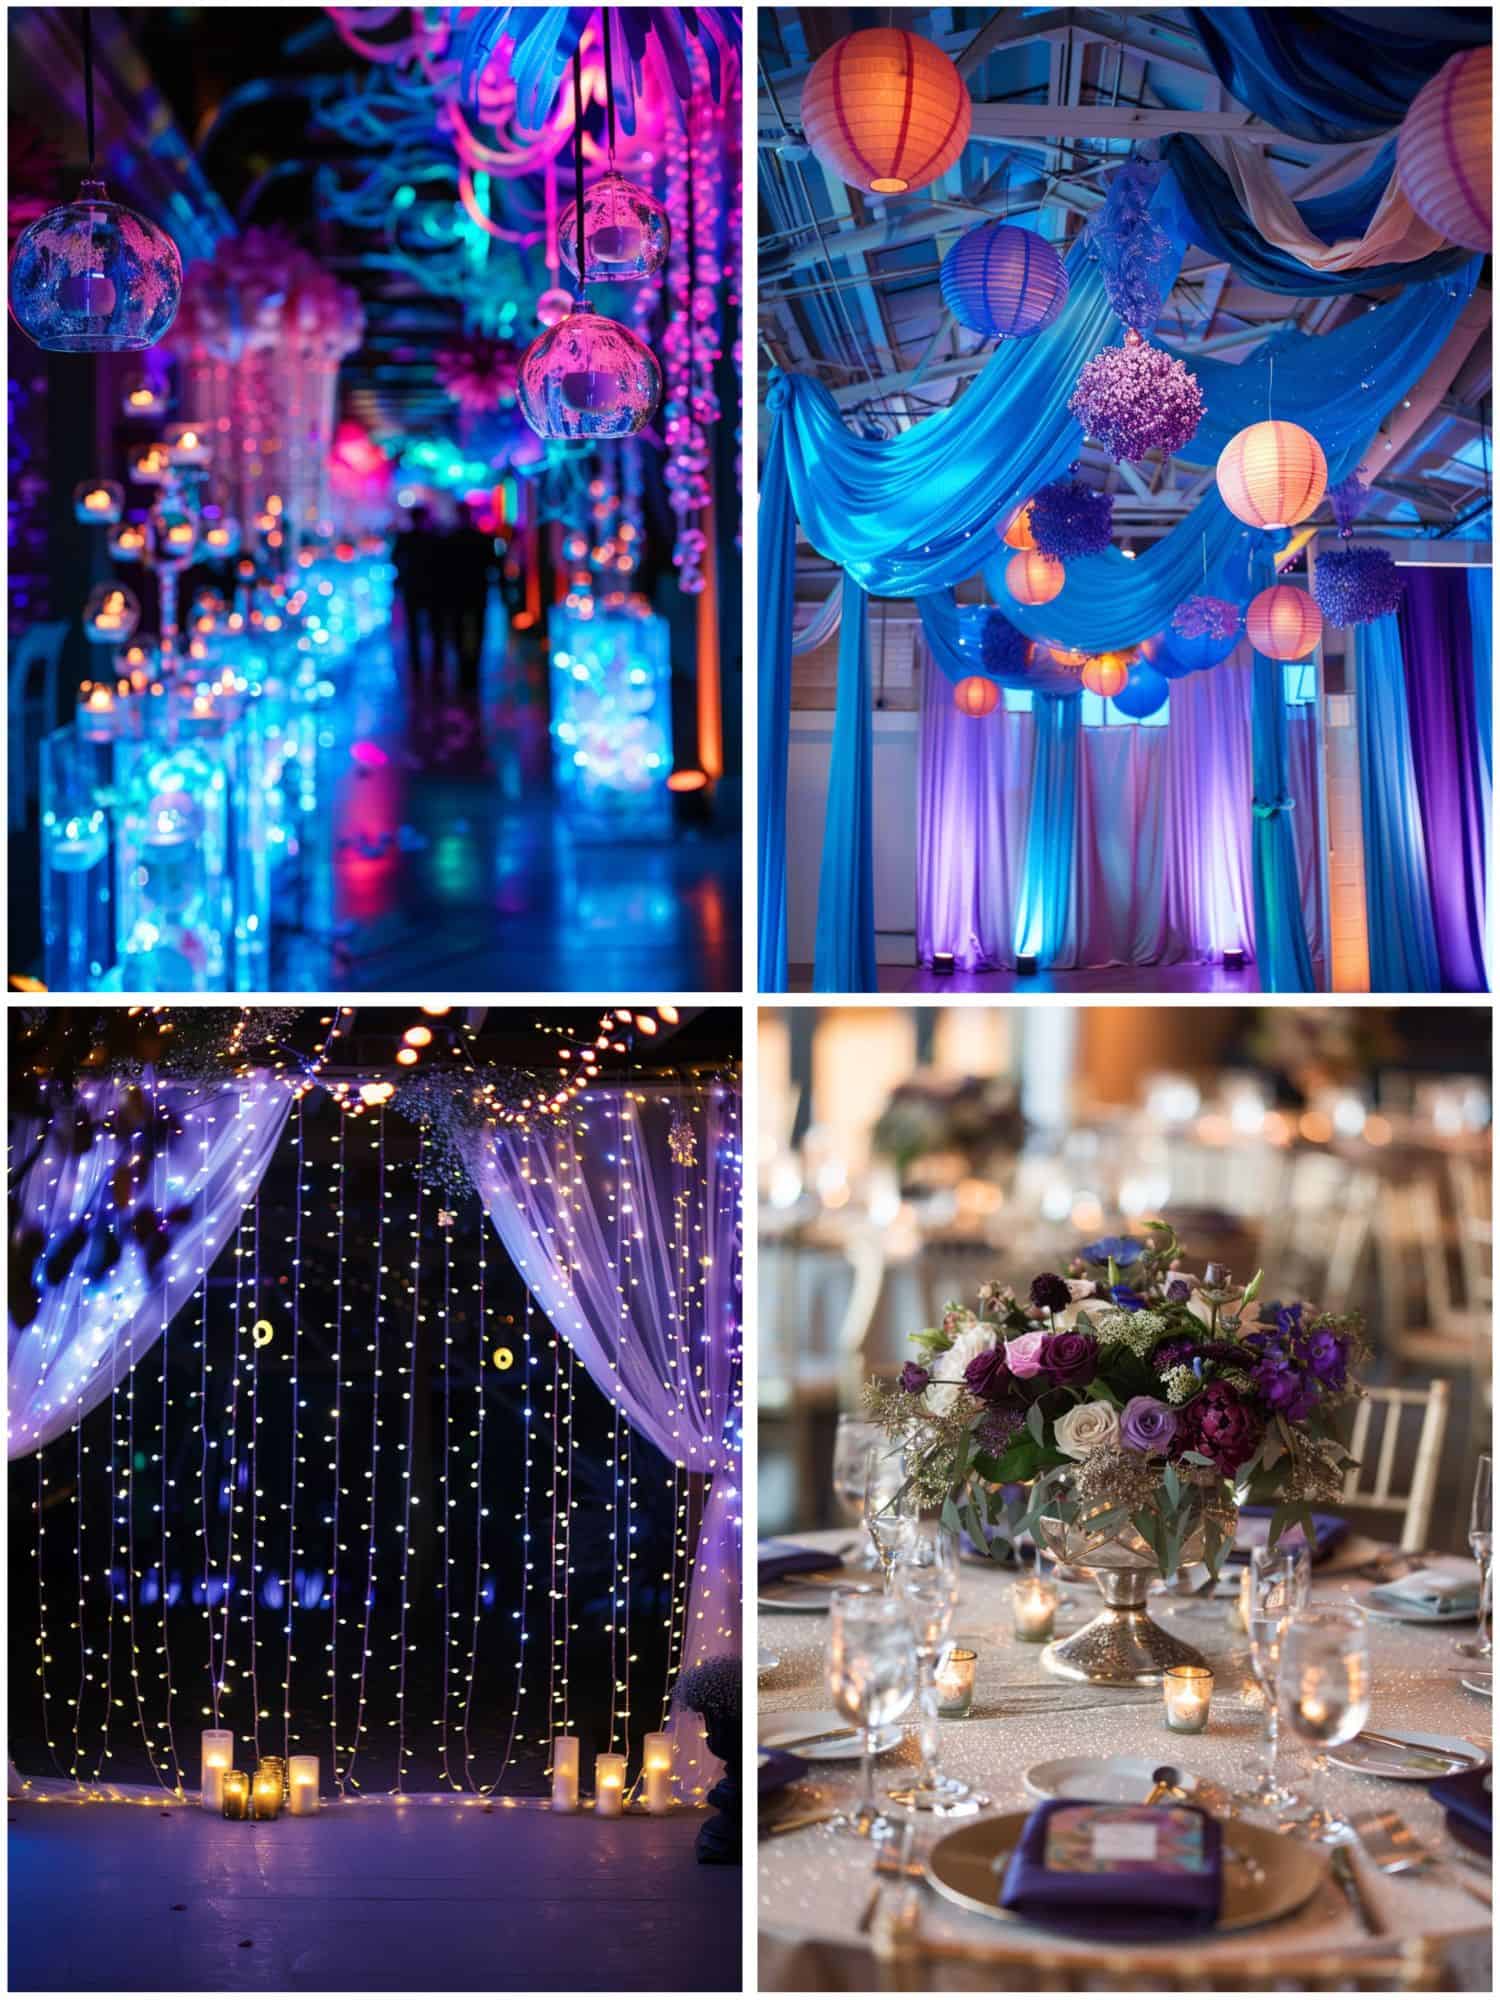 reception decor in blue and purple